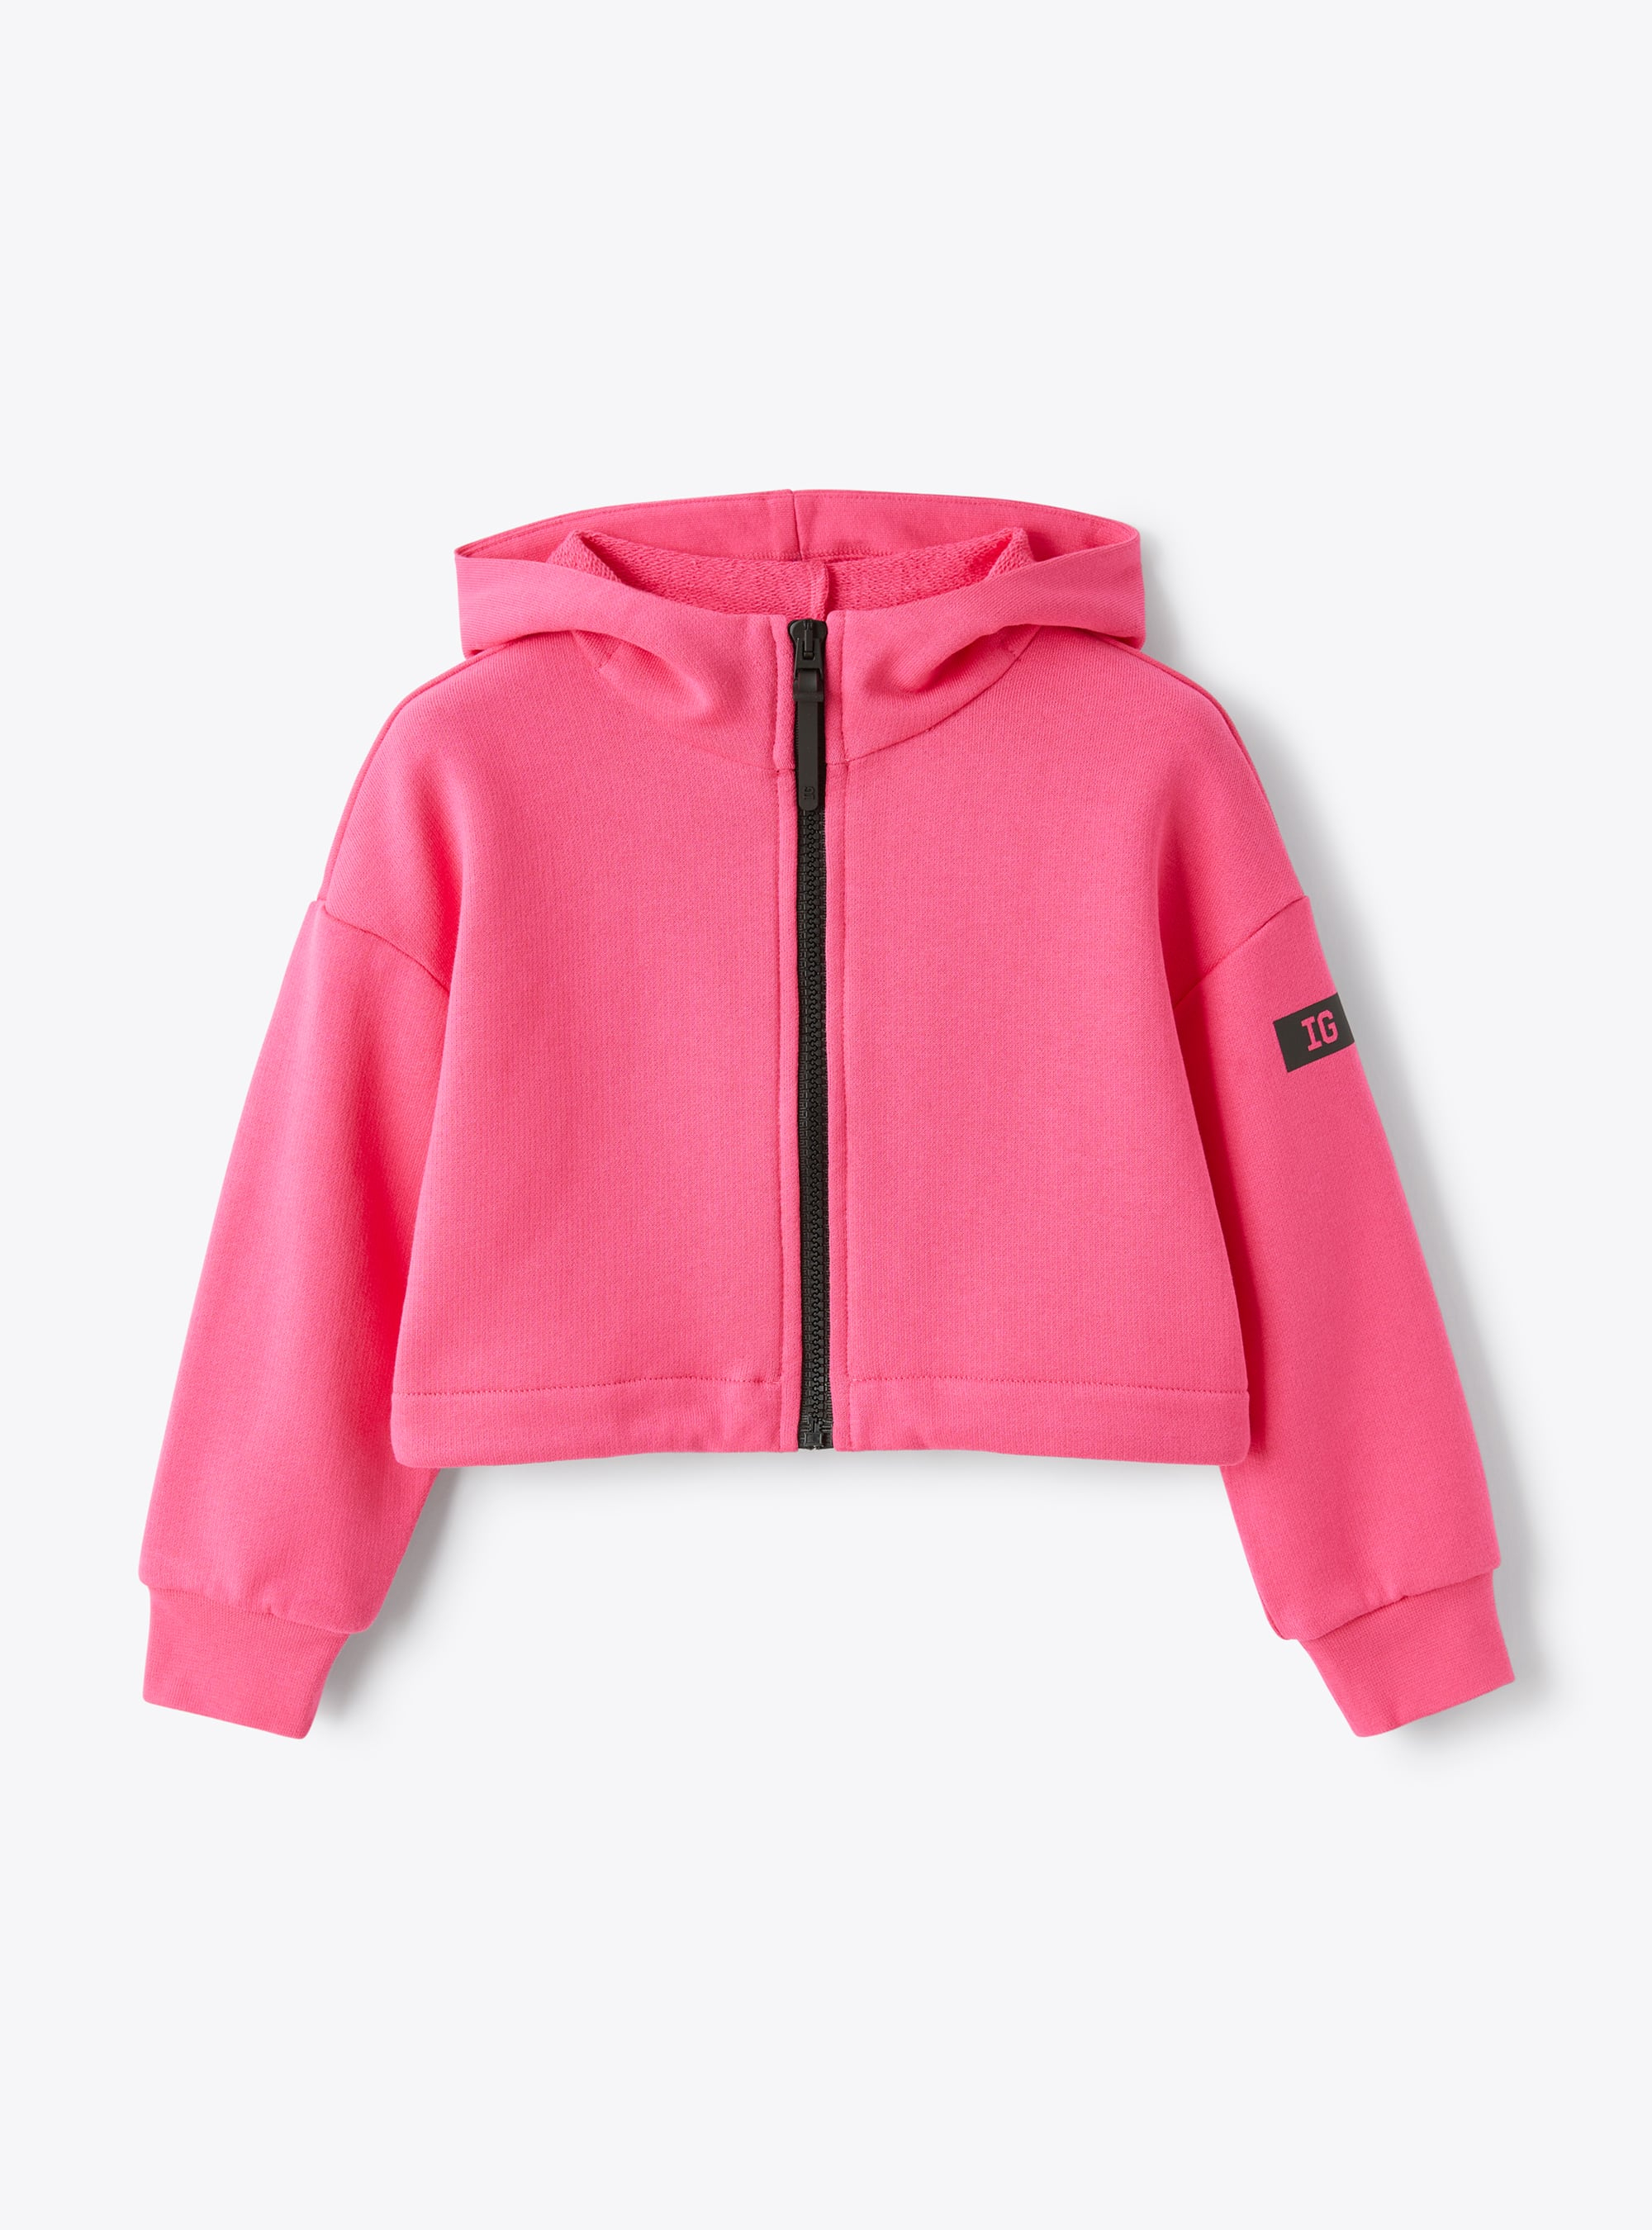 Pinkfarbene Sweatjacke mit durchgehendem Reißverschluss - Sweatshirts - Il Gufo